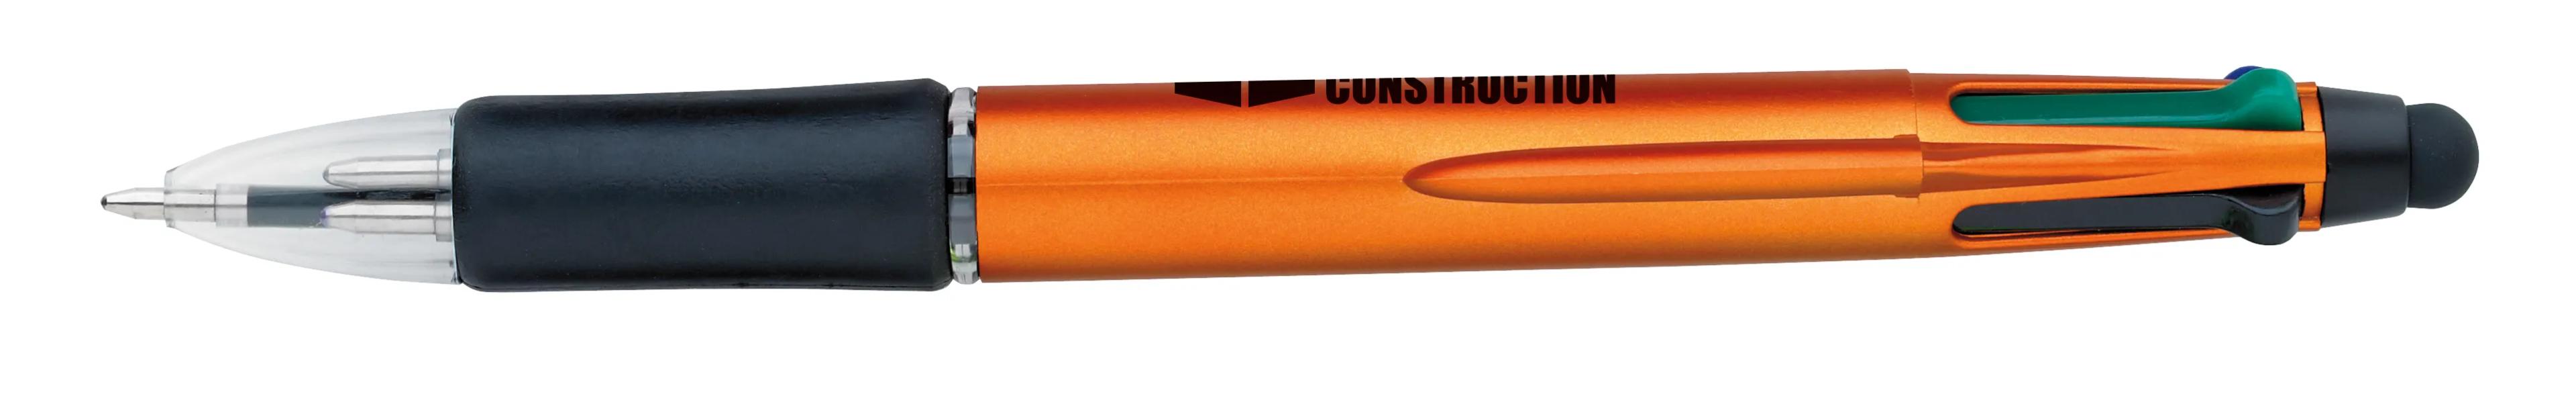 Orbitor Metallic Stylus Pen 34 of 56